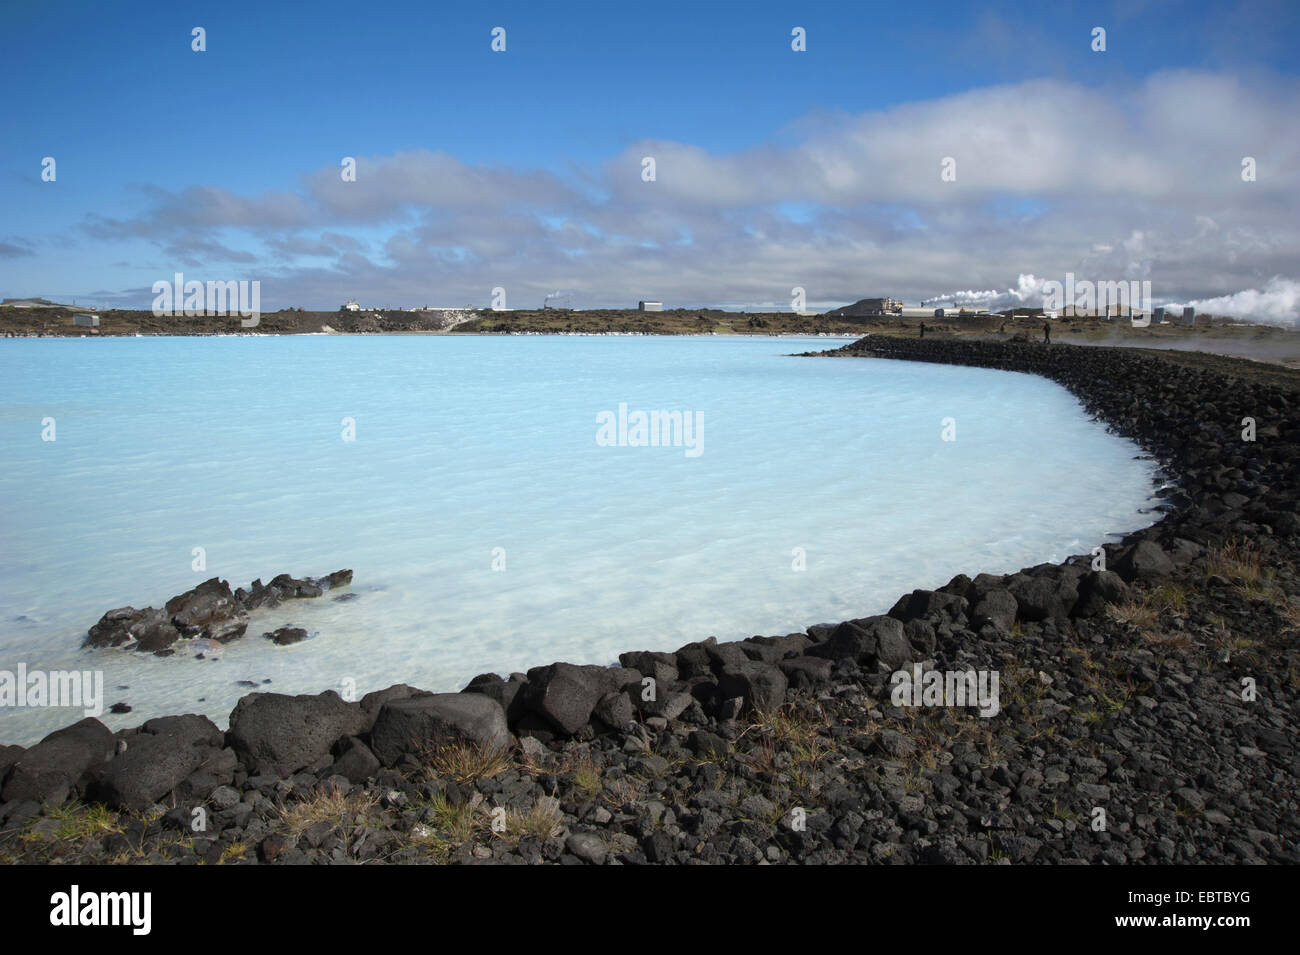 Brillante lago azul en el área geotérmica cerca del volcán Gunnuhver, Islandia, península de Reykjanes Foto de stock